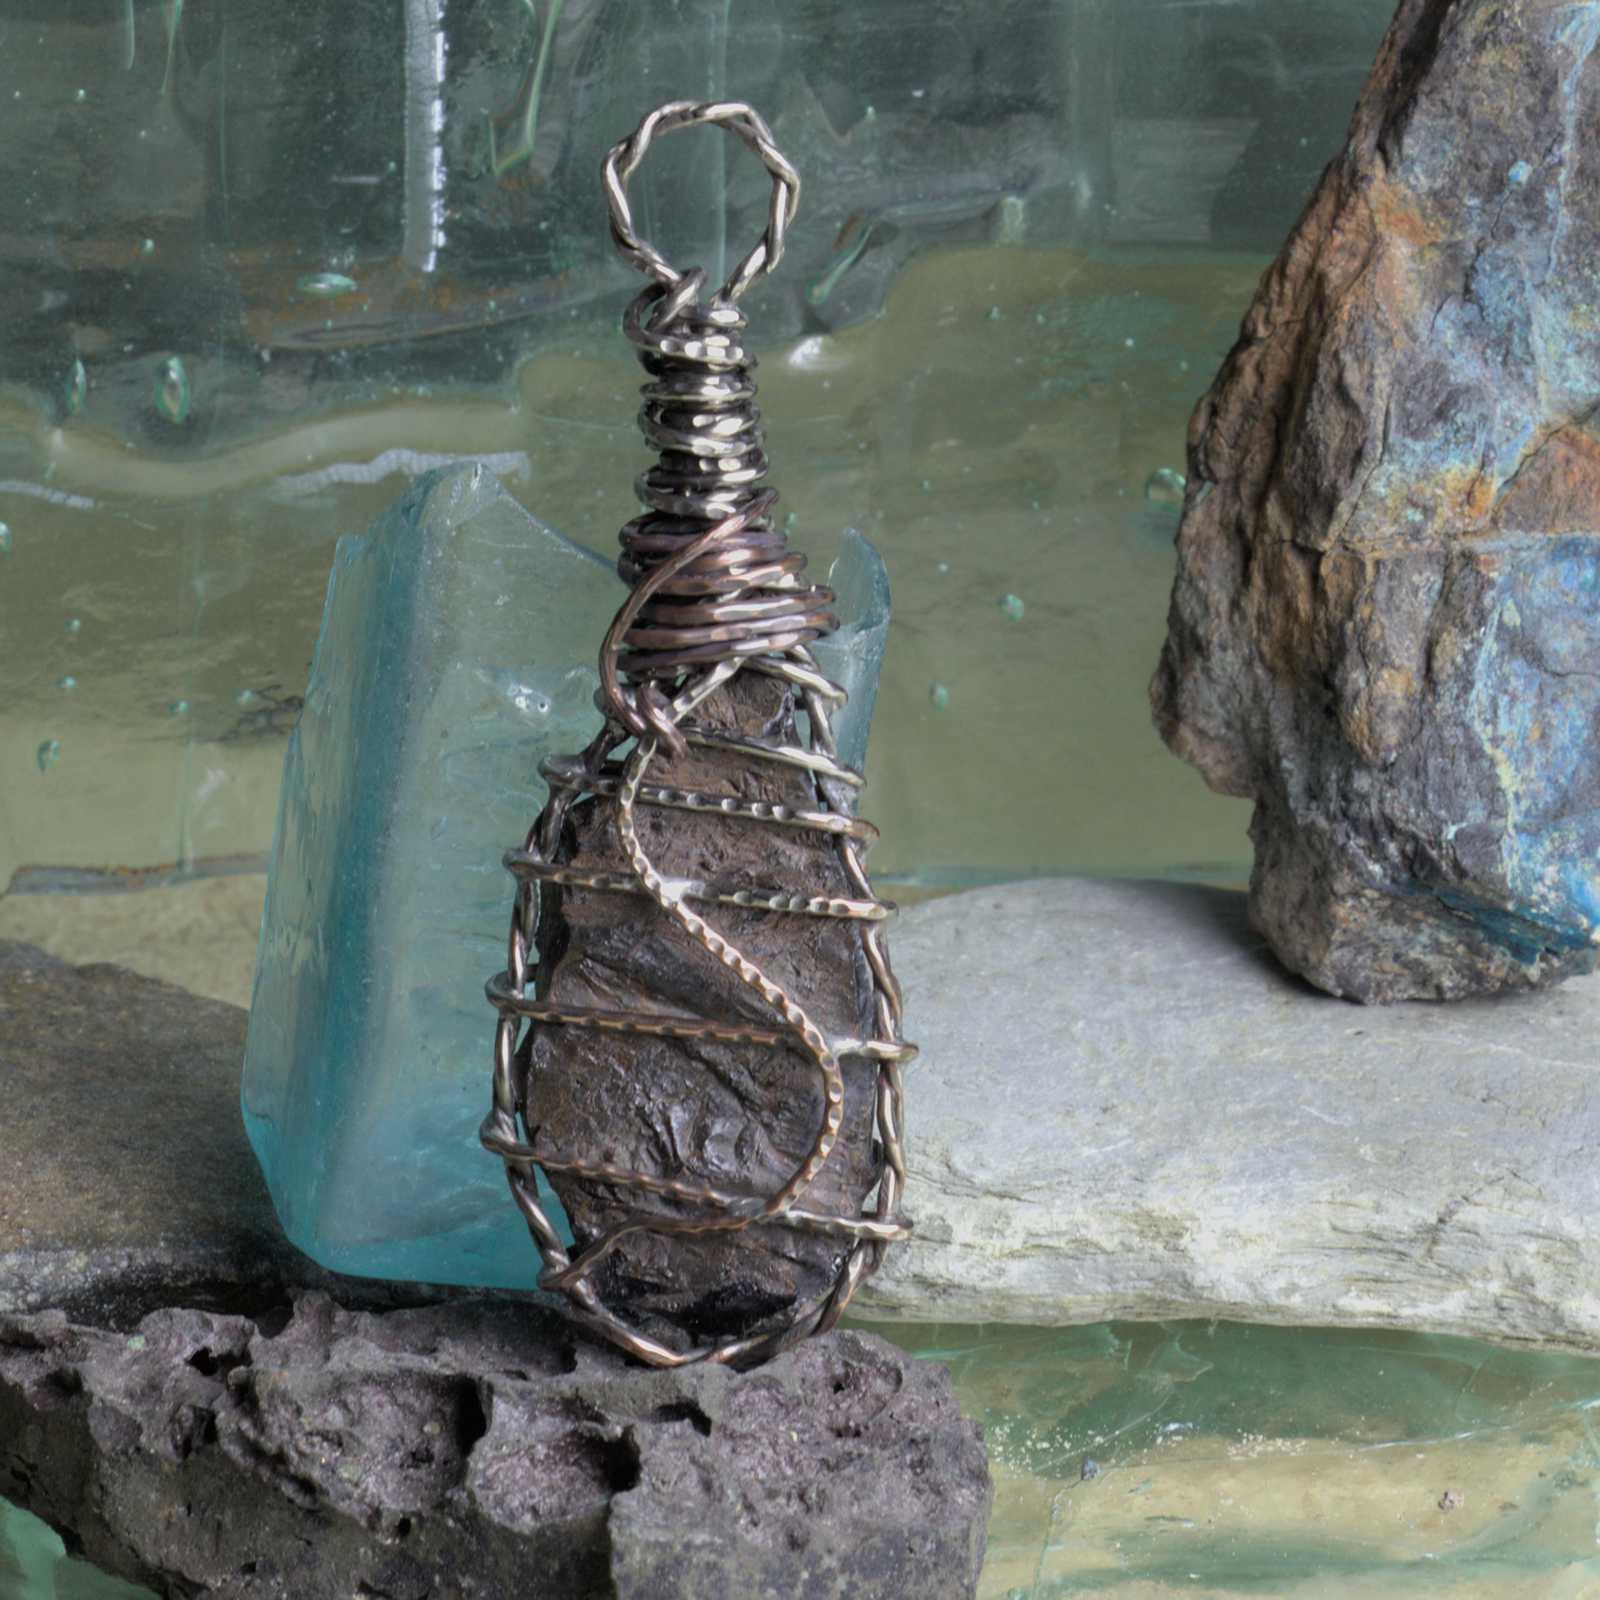 Copper slag accessory